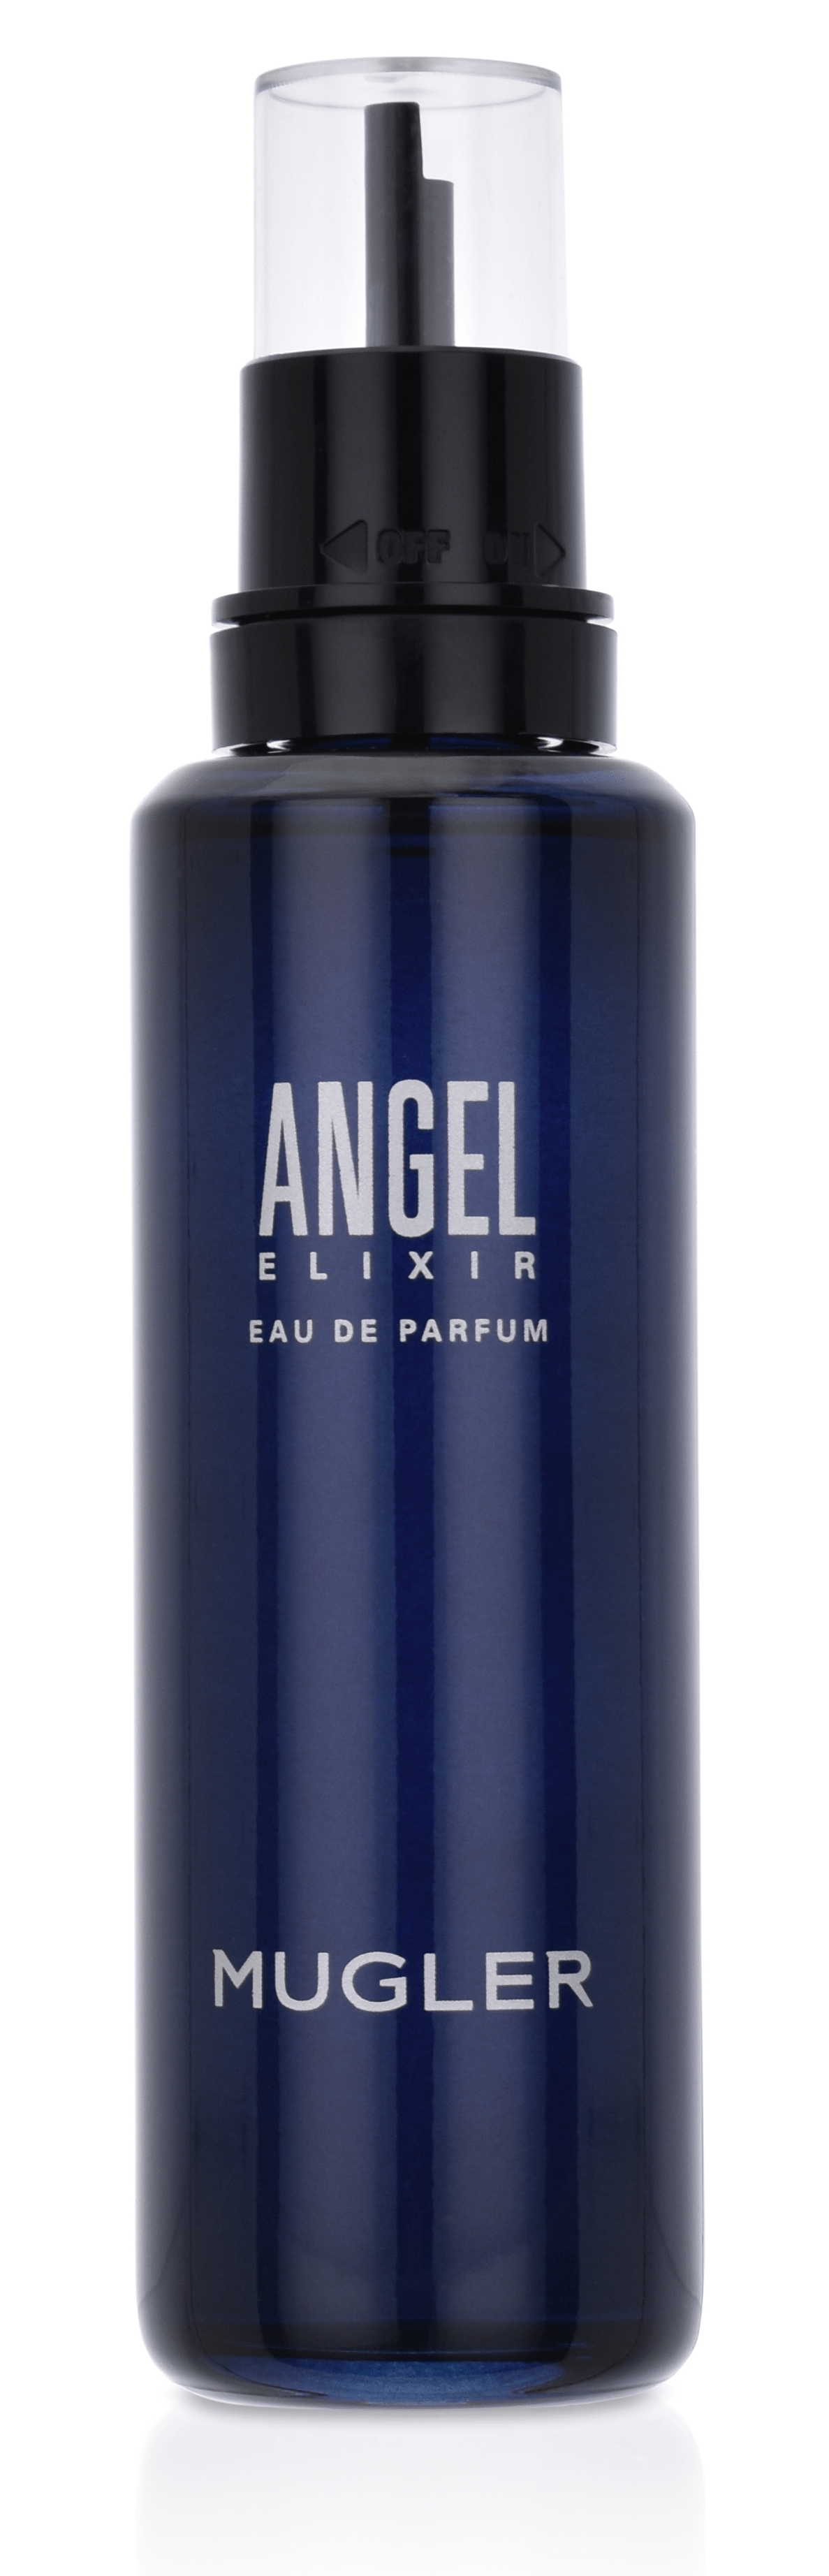 Thierry Mugler Angel Elixir 100 ml Eau de Parfum recharge